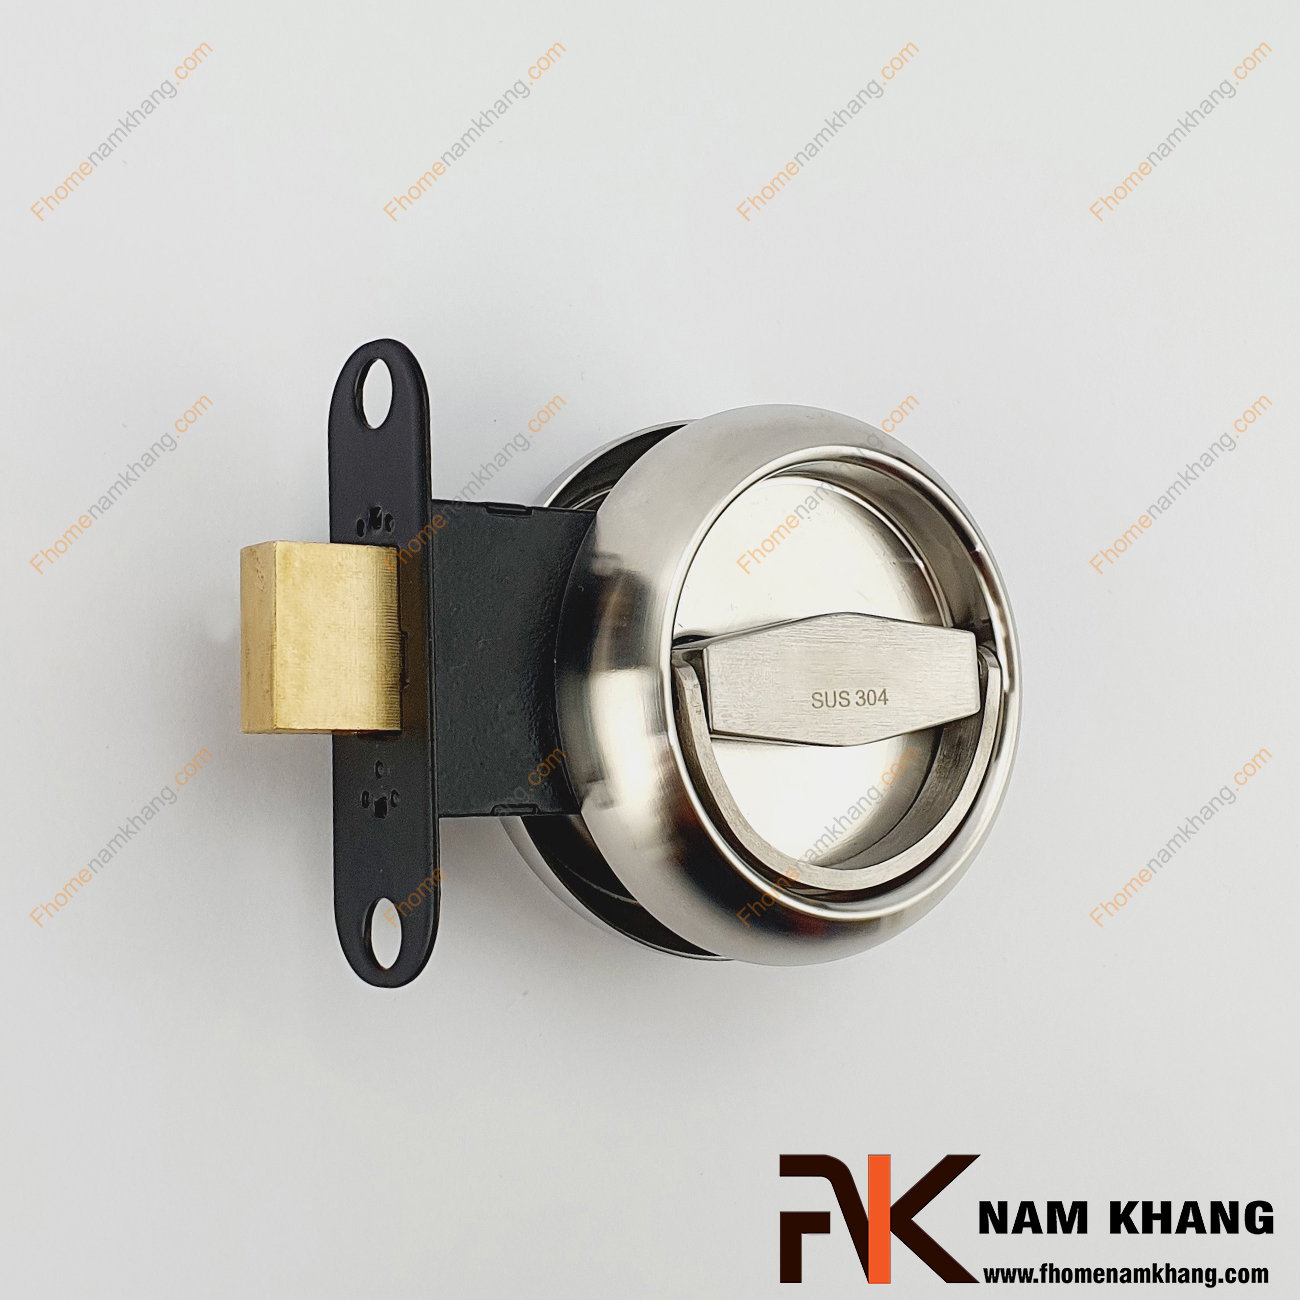 Khóa âm cửa mở cao cấp màu inox xước NK567H-GX là dạng dành cho các dạng cửa mở thông thường. Sản phẩm khóa này chỉ bao gồm phần hộp chốt và tay vặn để lắp đặt trong những không gian không sử dụng khóa chìa thông dụng.